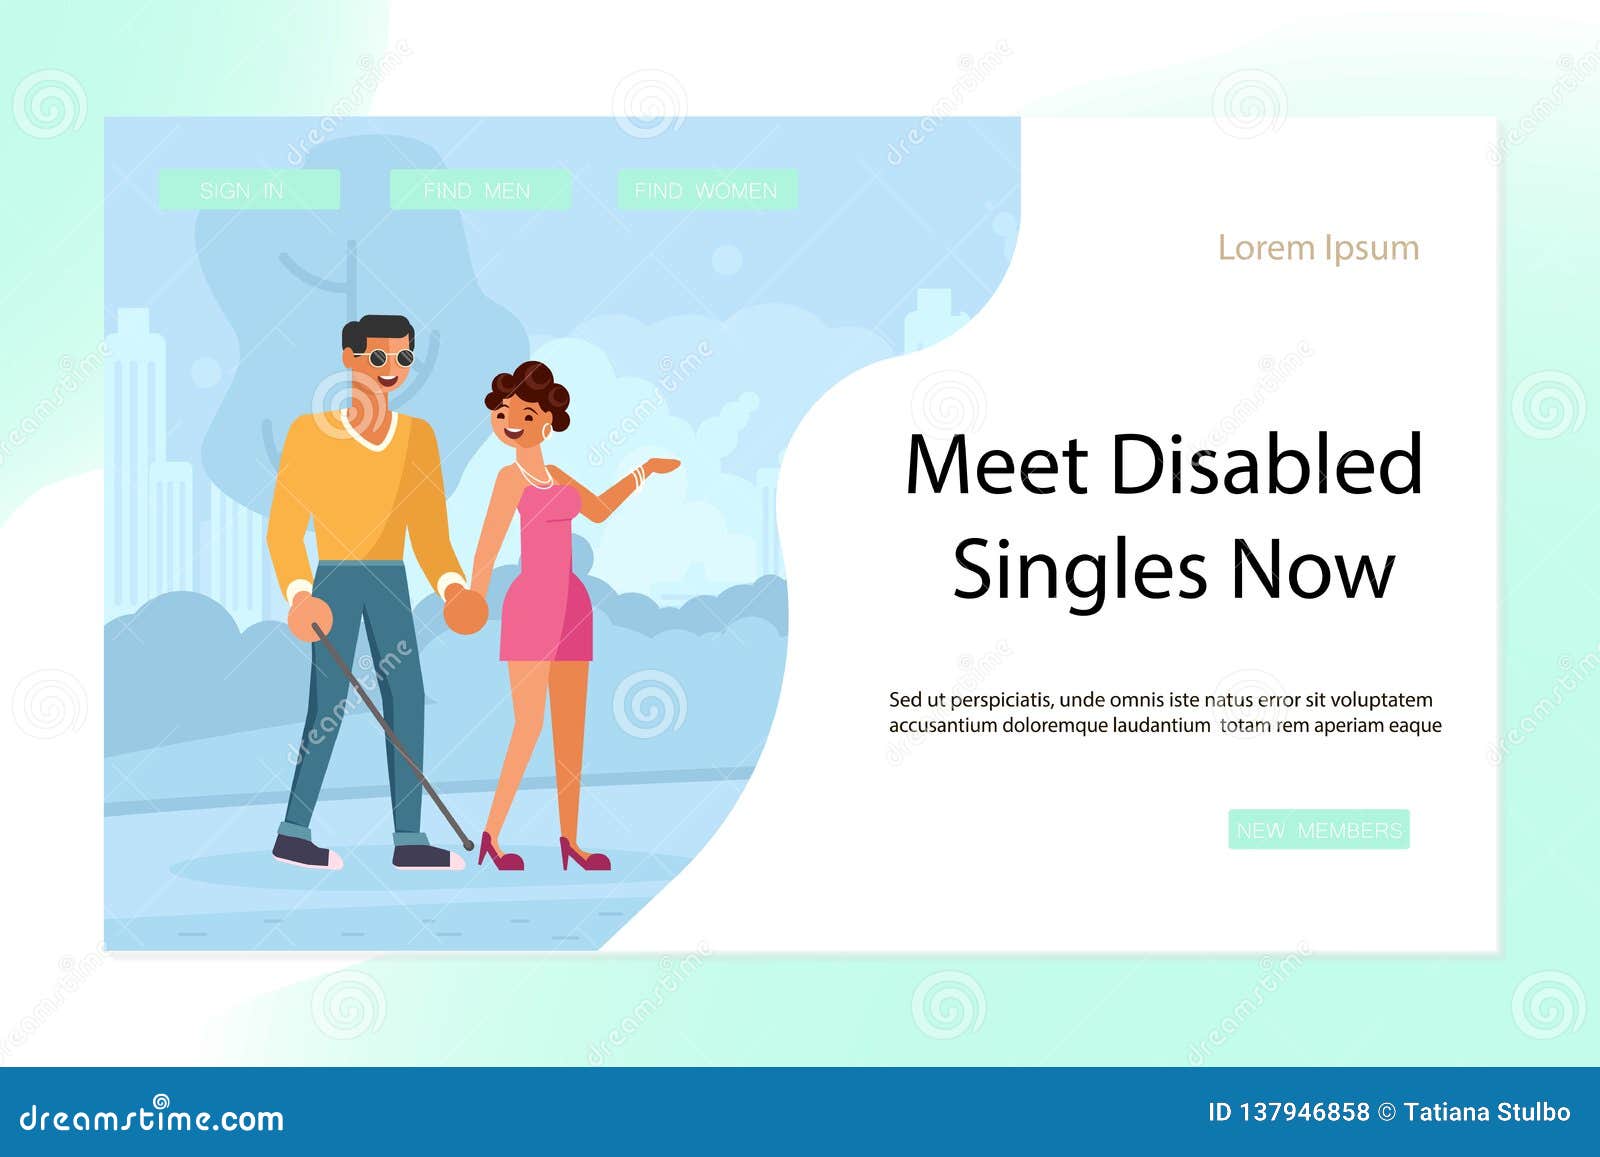 Disabled Dating – Choose the Best Dating Platform